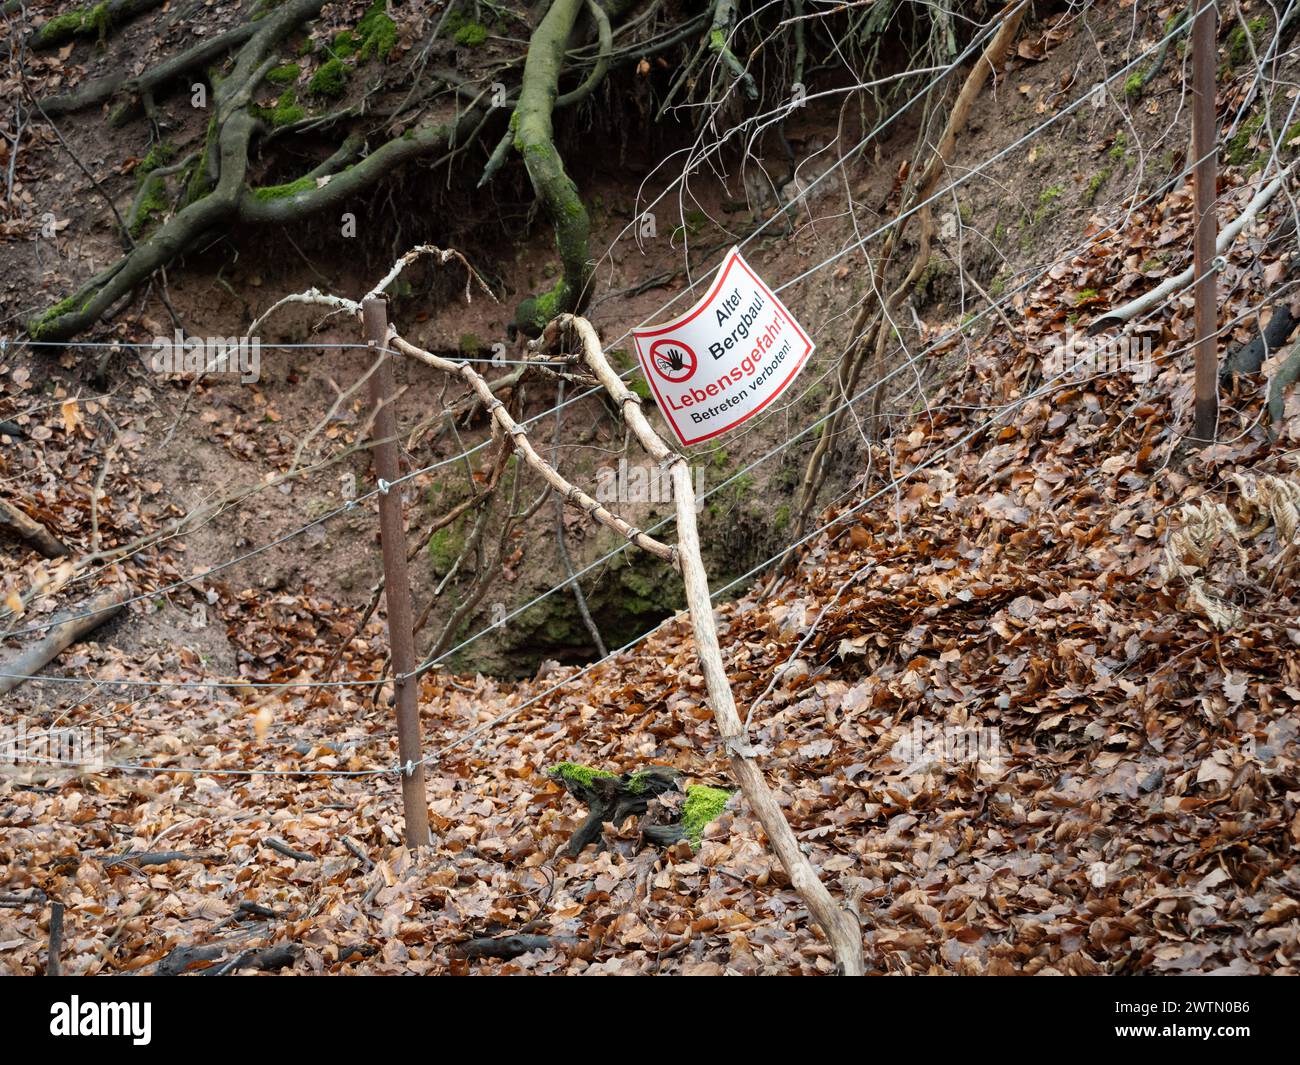 Entrata crollata di una vecchia miniera con un cartello di pericolo "Lebensgefahr - Betreten verboten!" (Pericolo per la vita - nessun disprezzo) in una foresta in Germania. Foto Stock